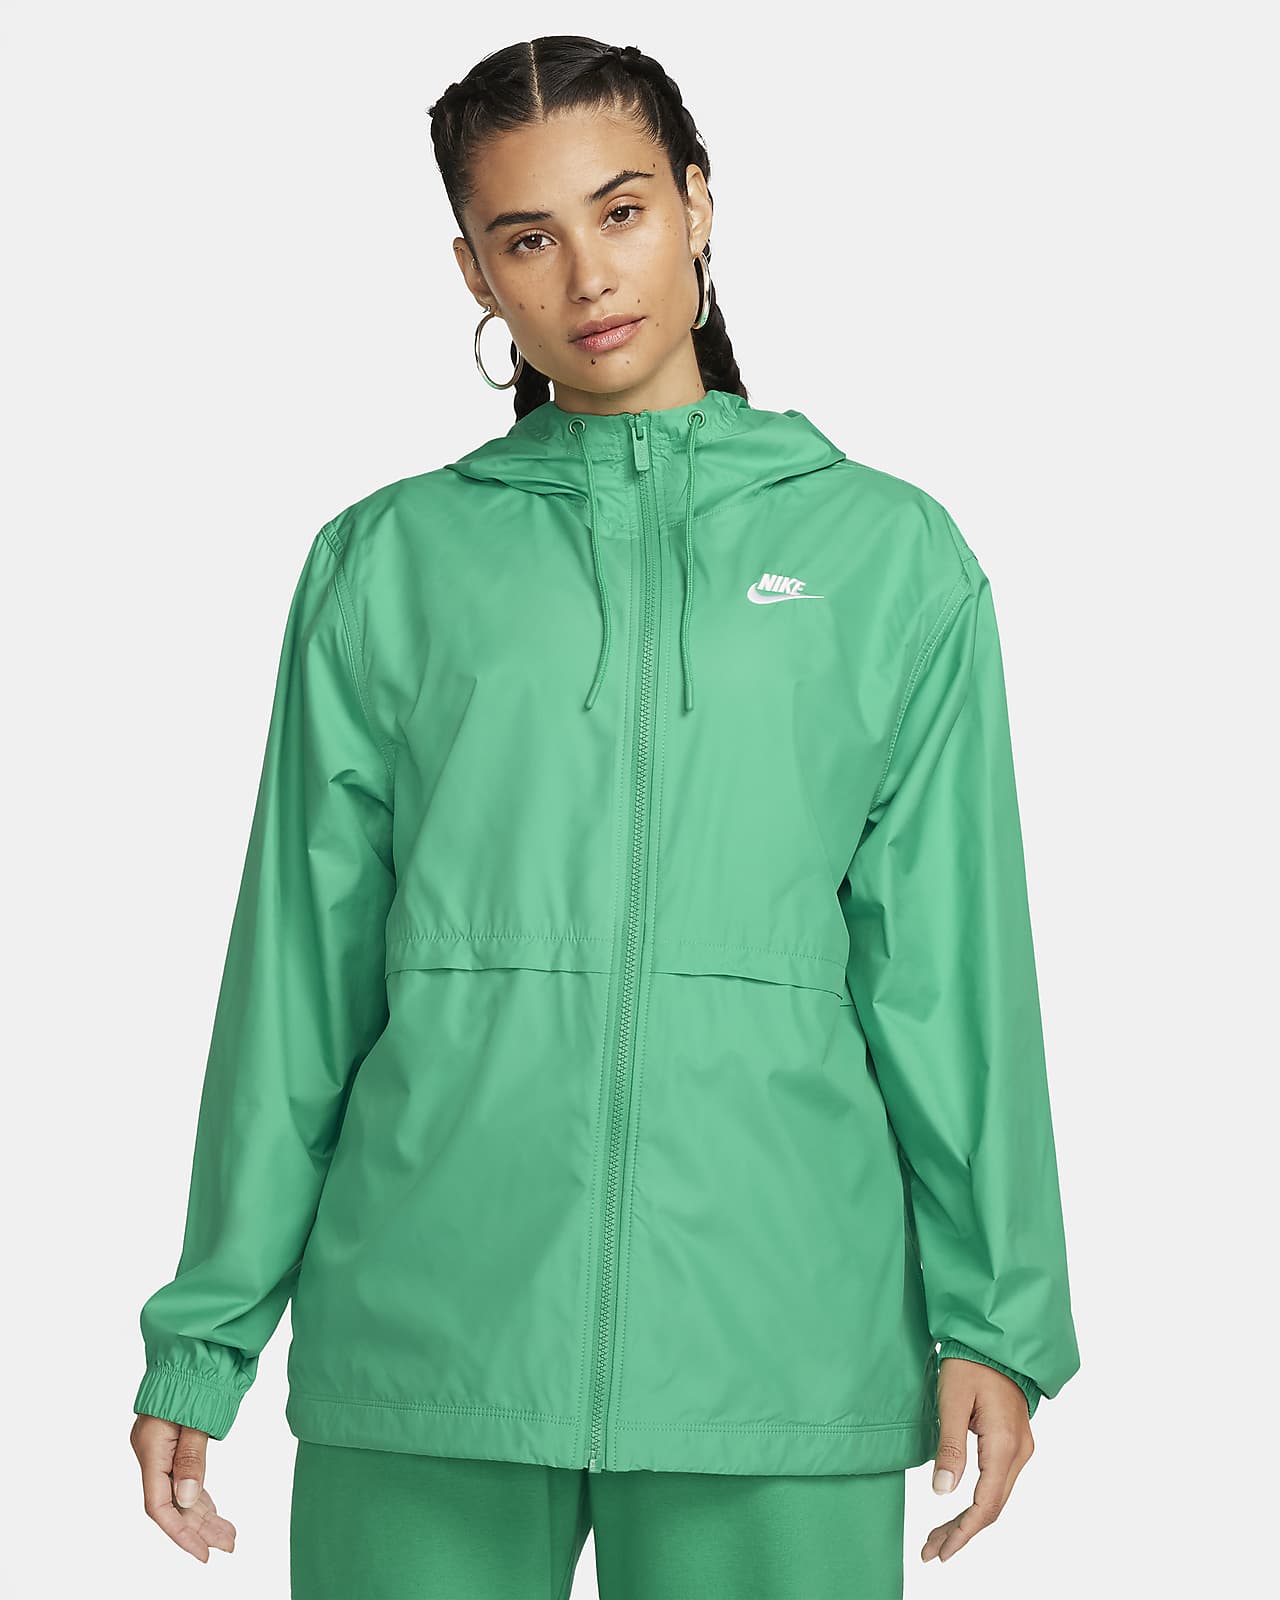 Nike Women's Dry Jacket | Running Warehouse